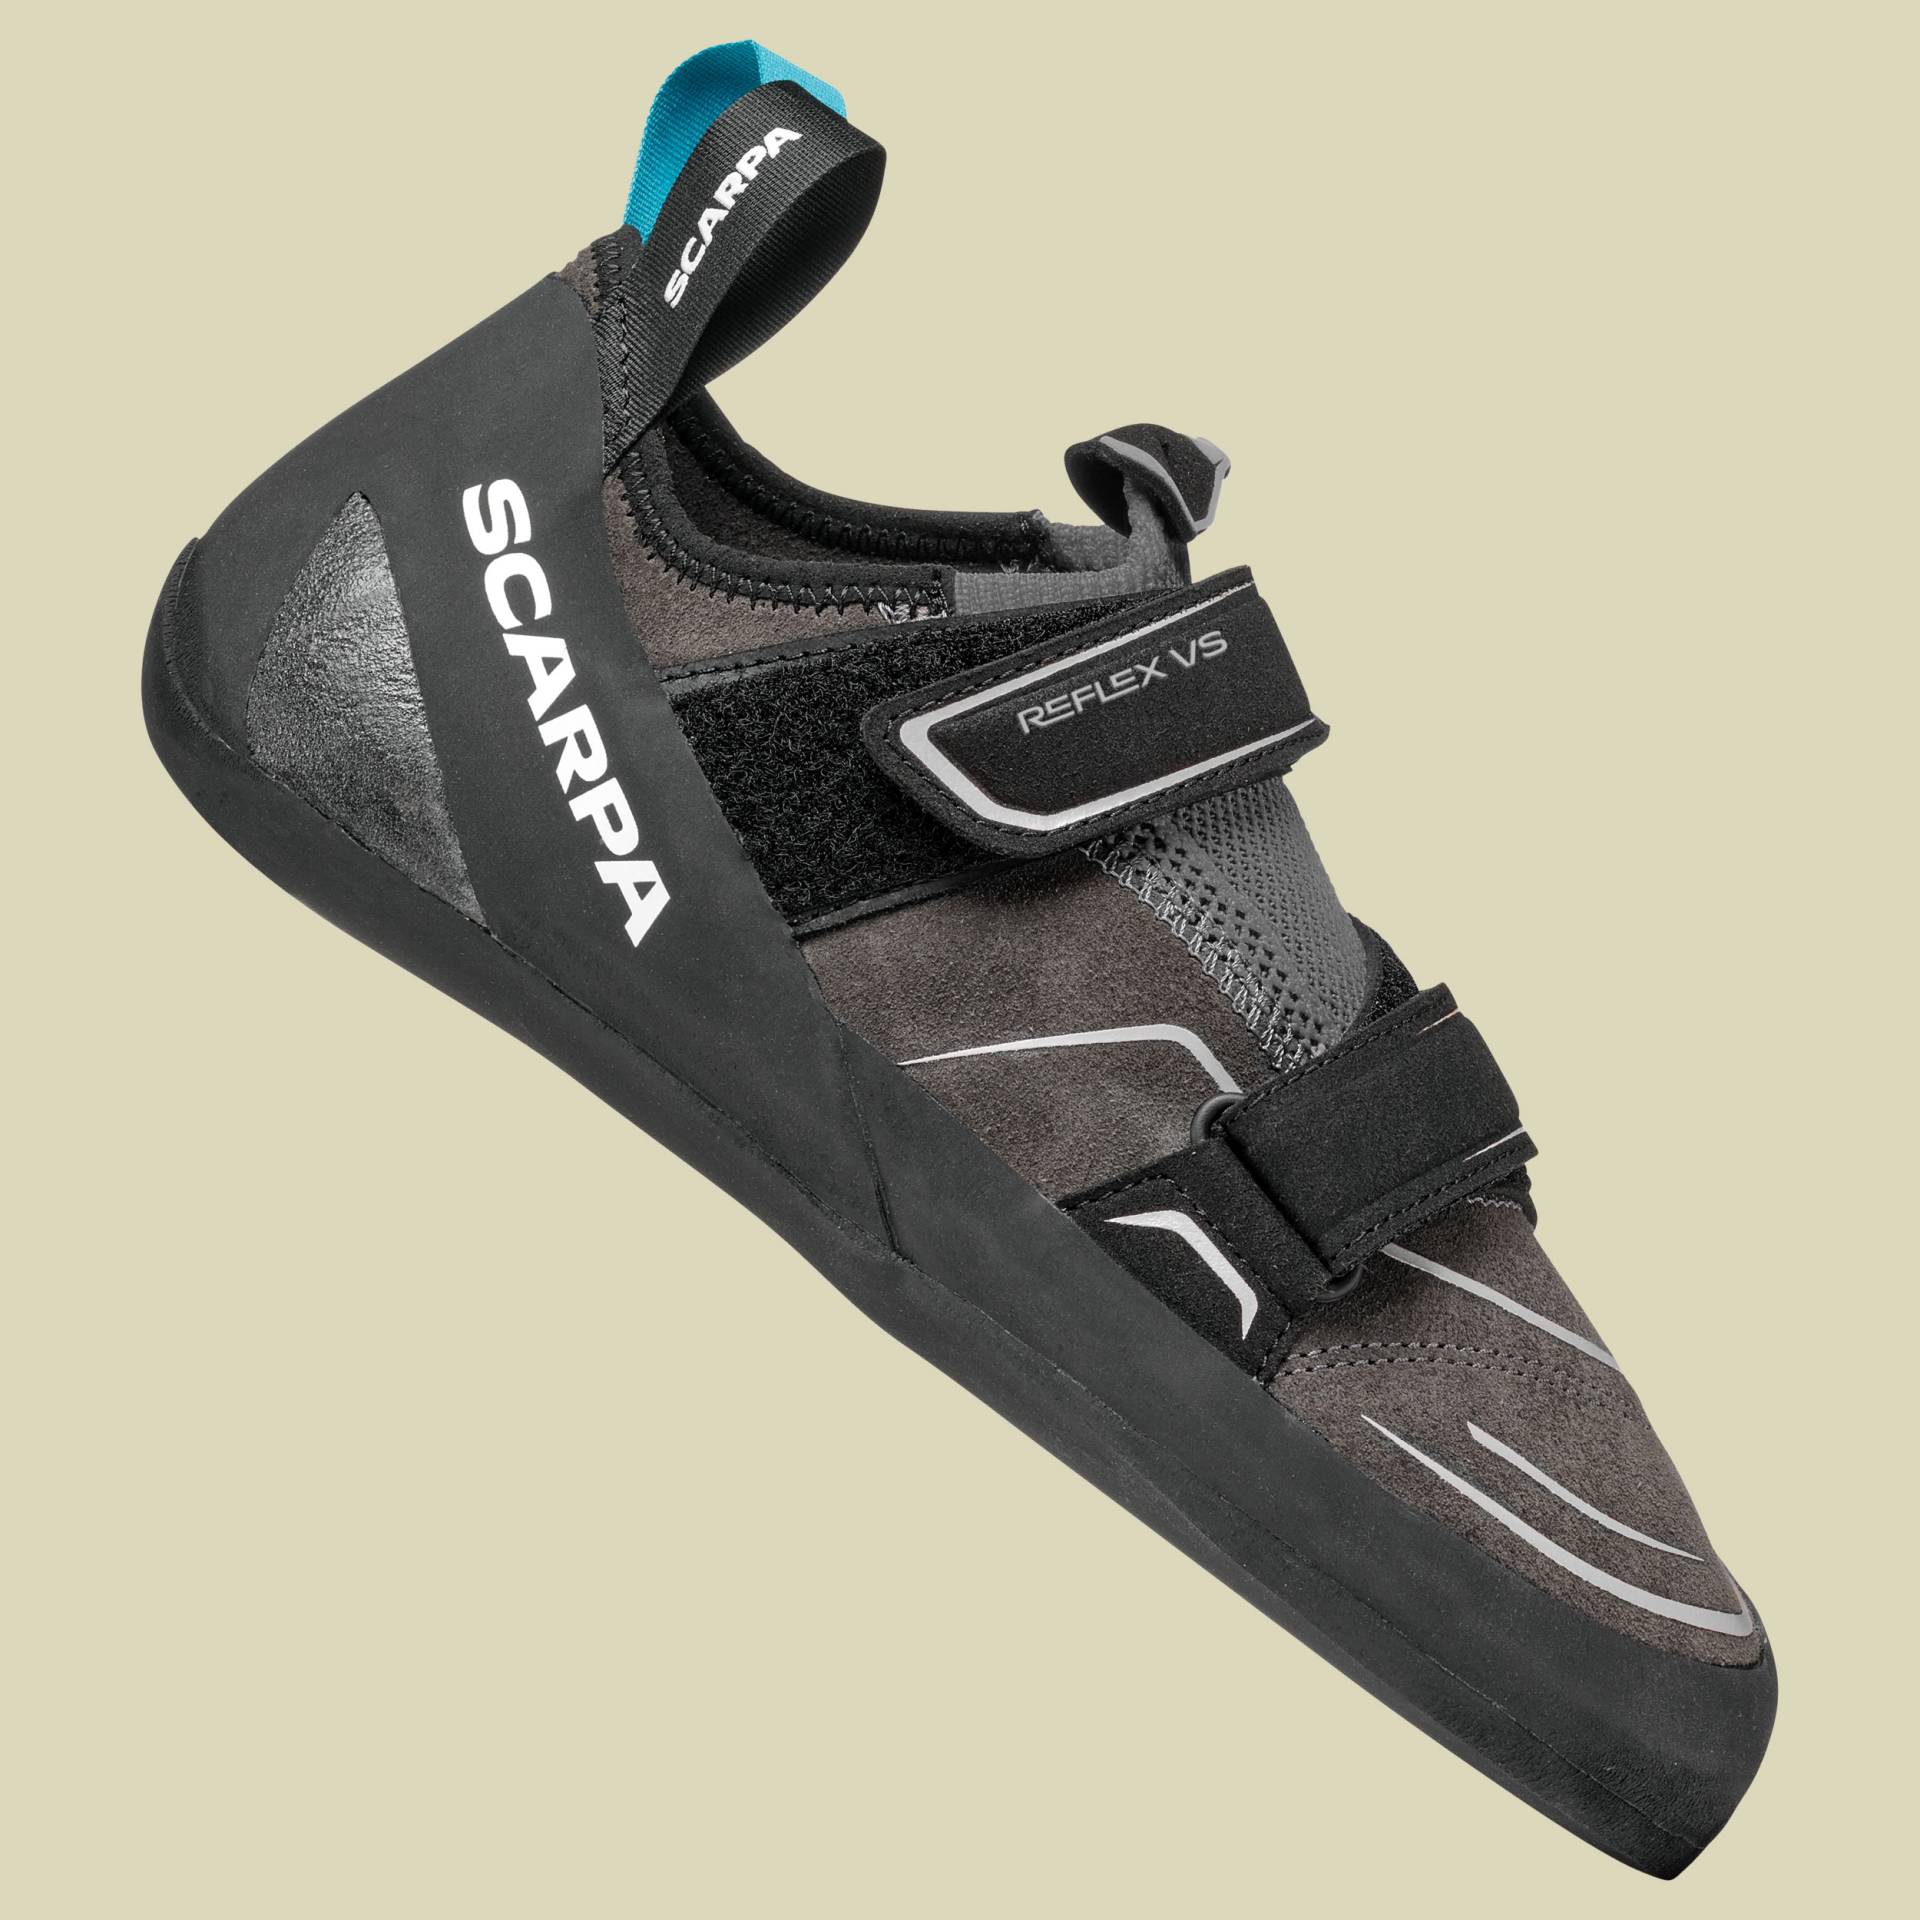 Reflex VS Men 46 schwarz- covery/black von Scarpa Schuhe